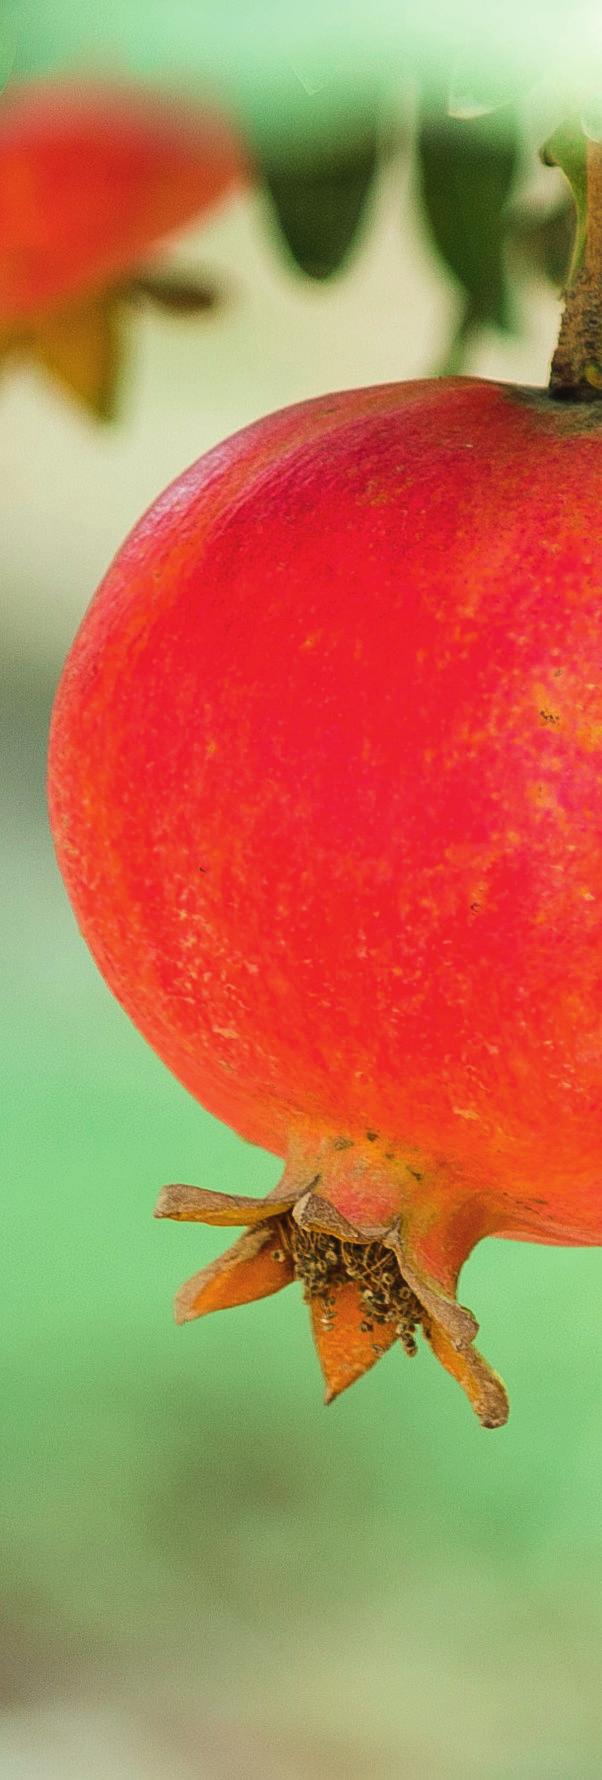 GRANATAPFEL GENUSS Granatapfel Der Granatapfel ist eine der ältesten Kultur- und Gesundheitsfrüchte